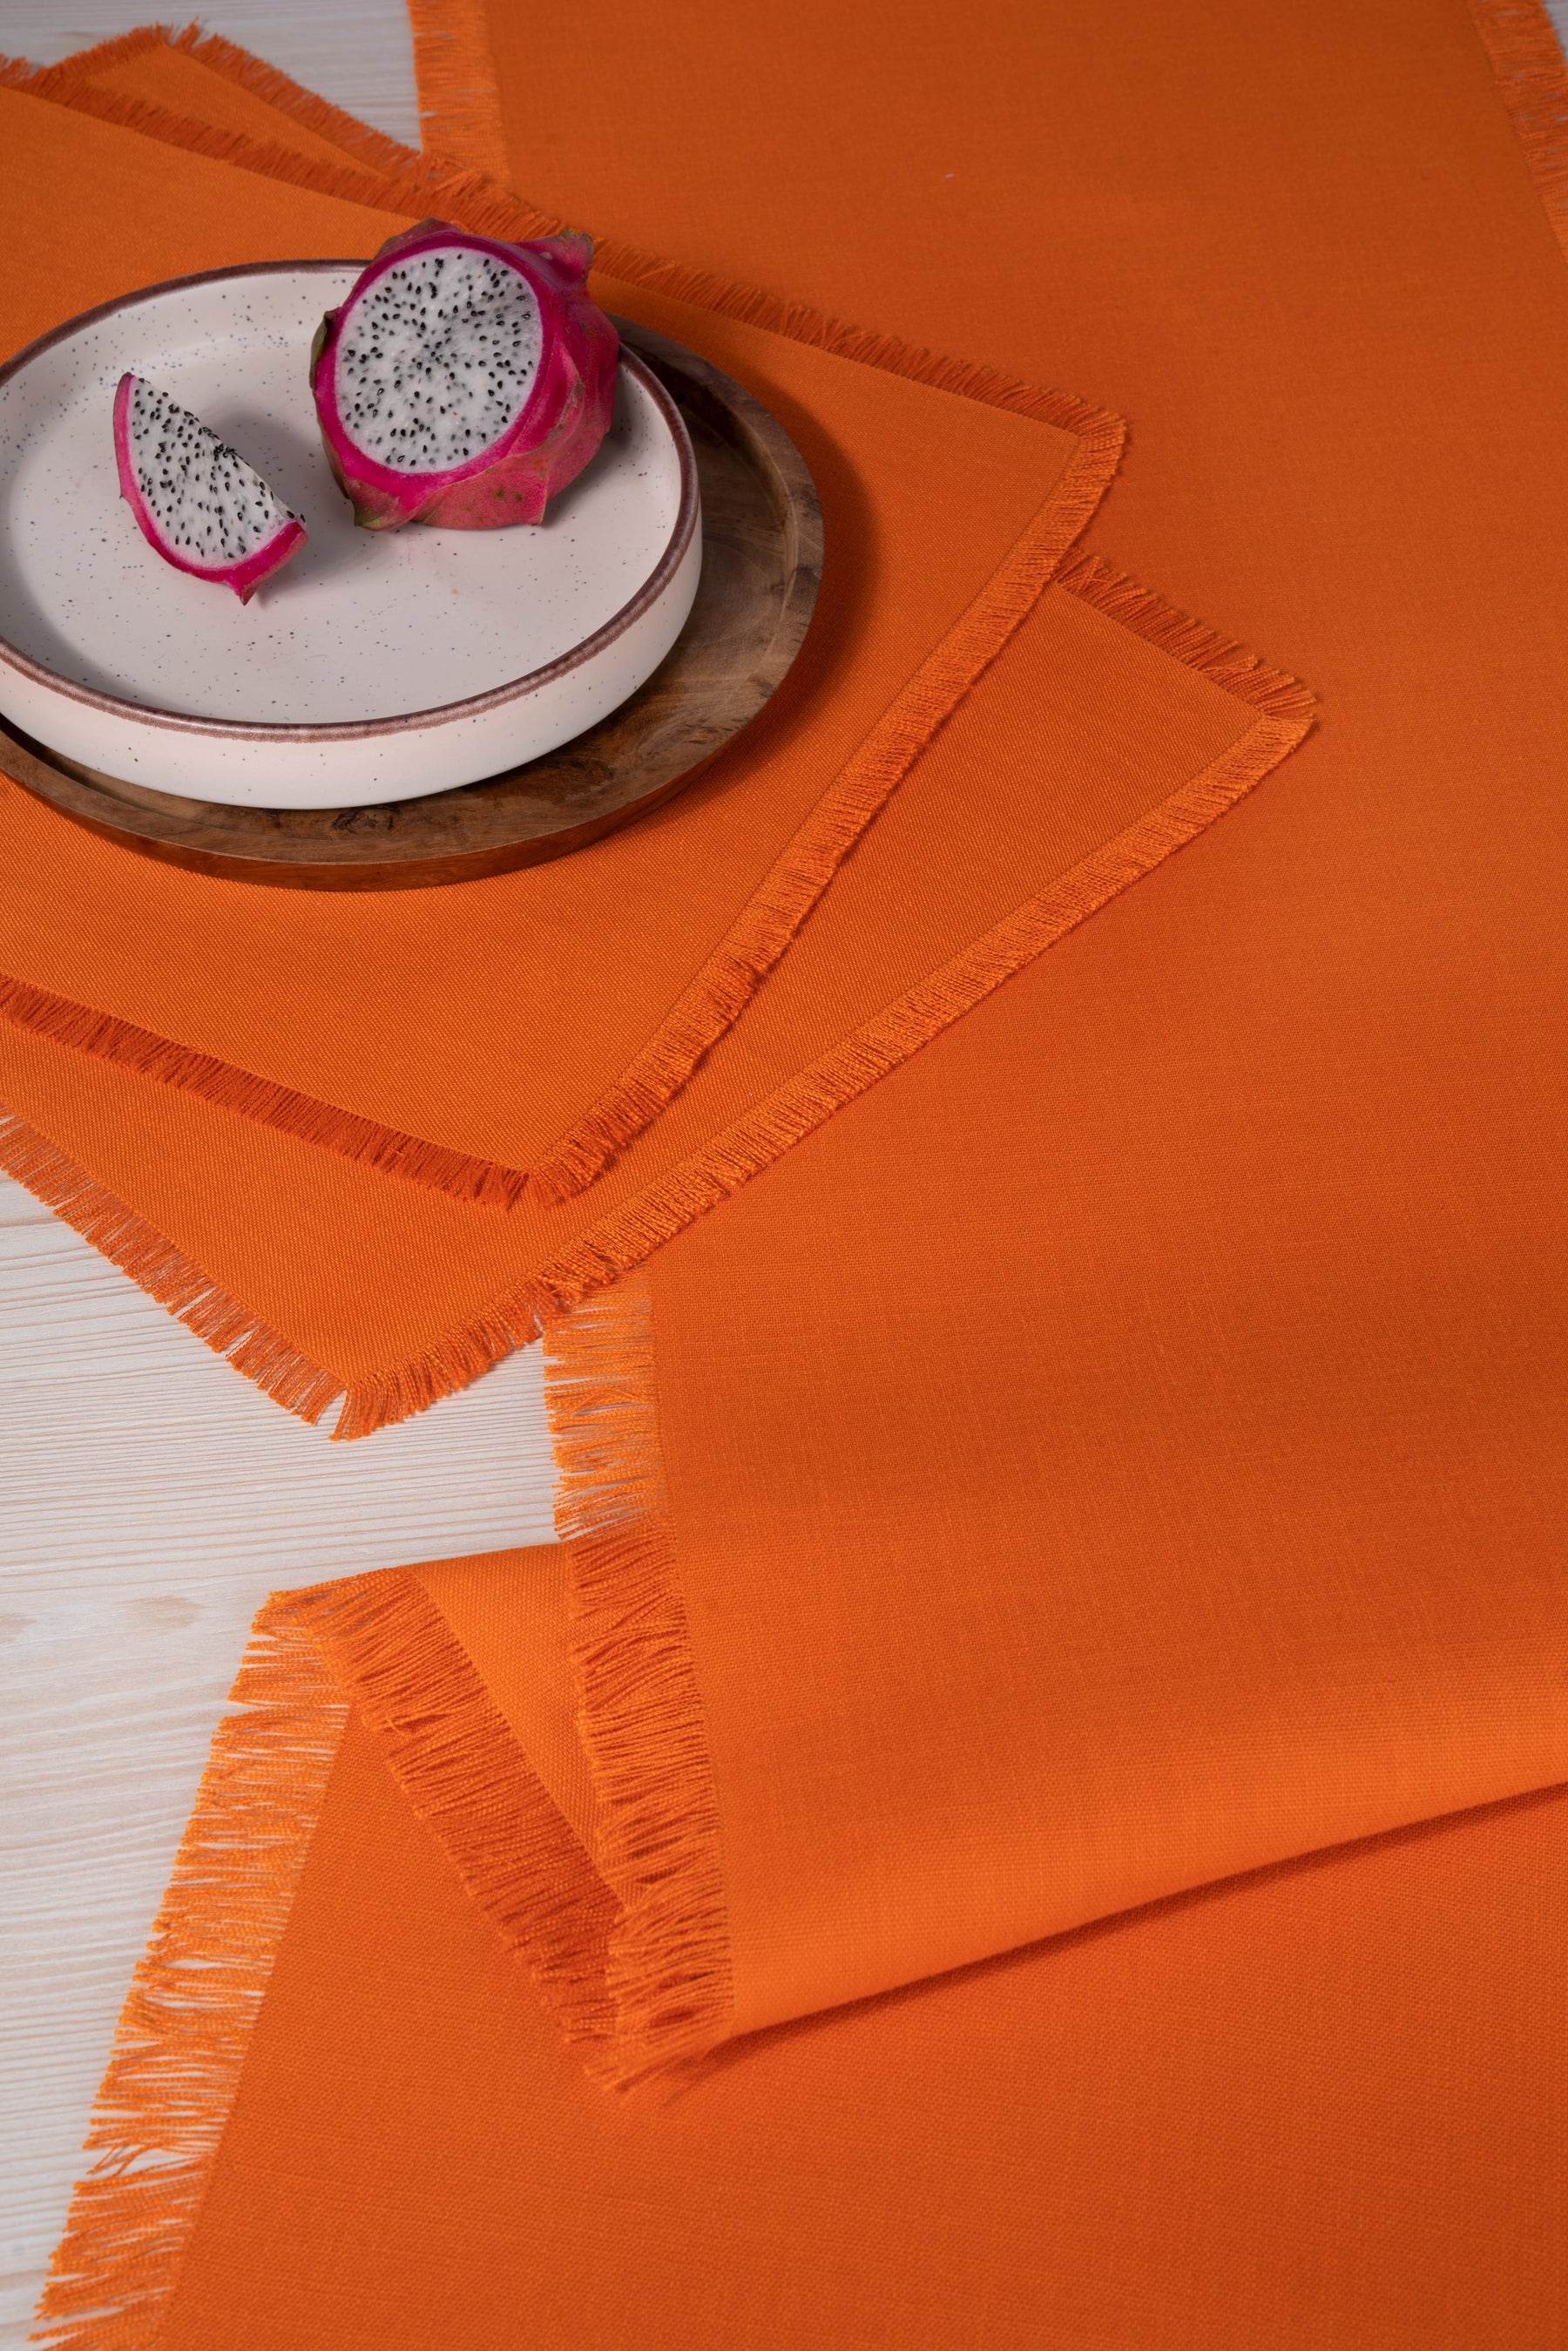 Orange Linen Textured Table Runner - Fringe